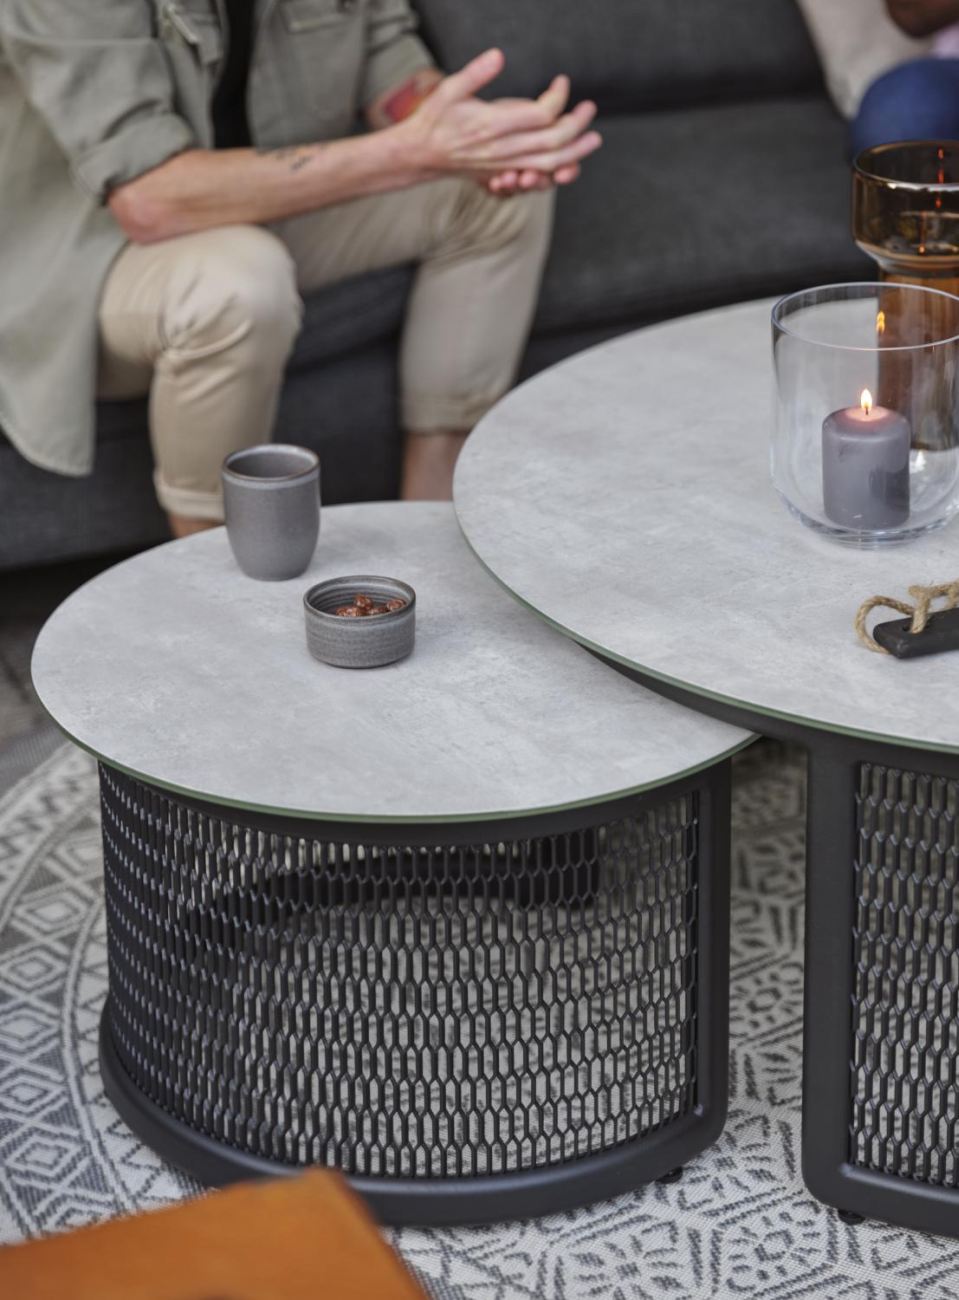 Der Gartencouchtisch Virgo überzeugt mit seinem modernen Design. Gefertigt wurde die Tischplatte aus Granit, welche einen hellgrauen Farbton besitzt. Das Gestell ist auch aus Metall und hat eine schwarze Farbe. Der Tisch besitzt einen Durchmesser von 60 c